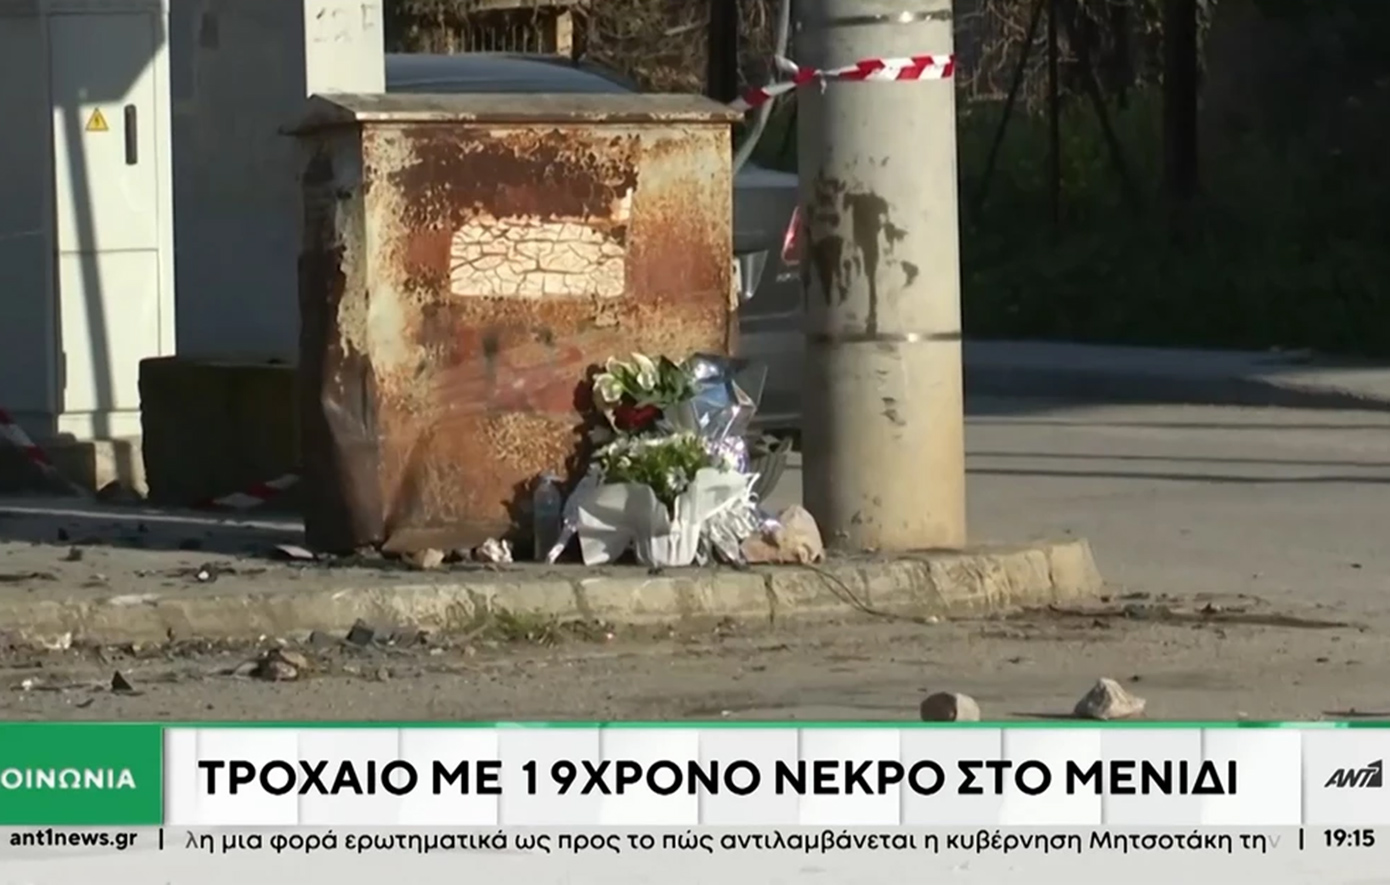 Θρήνος για τον 19χρονο που σκοτώθηκε στο τροχαίο στο οποίο ενεπλάκη ο Γιάννης Ξανθόπουλος